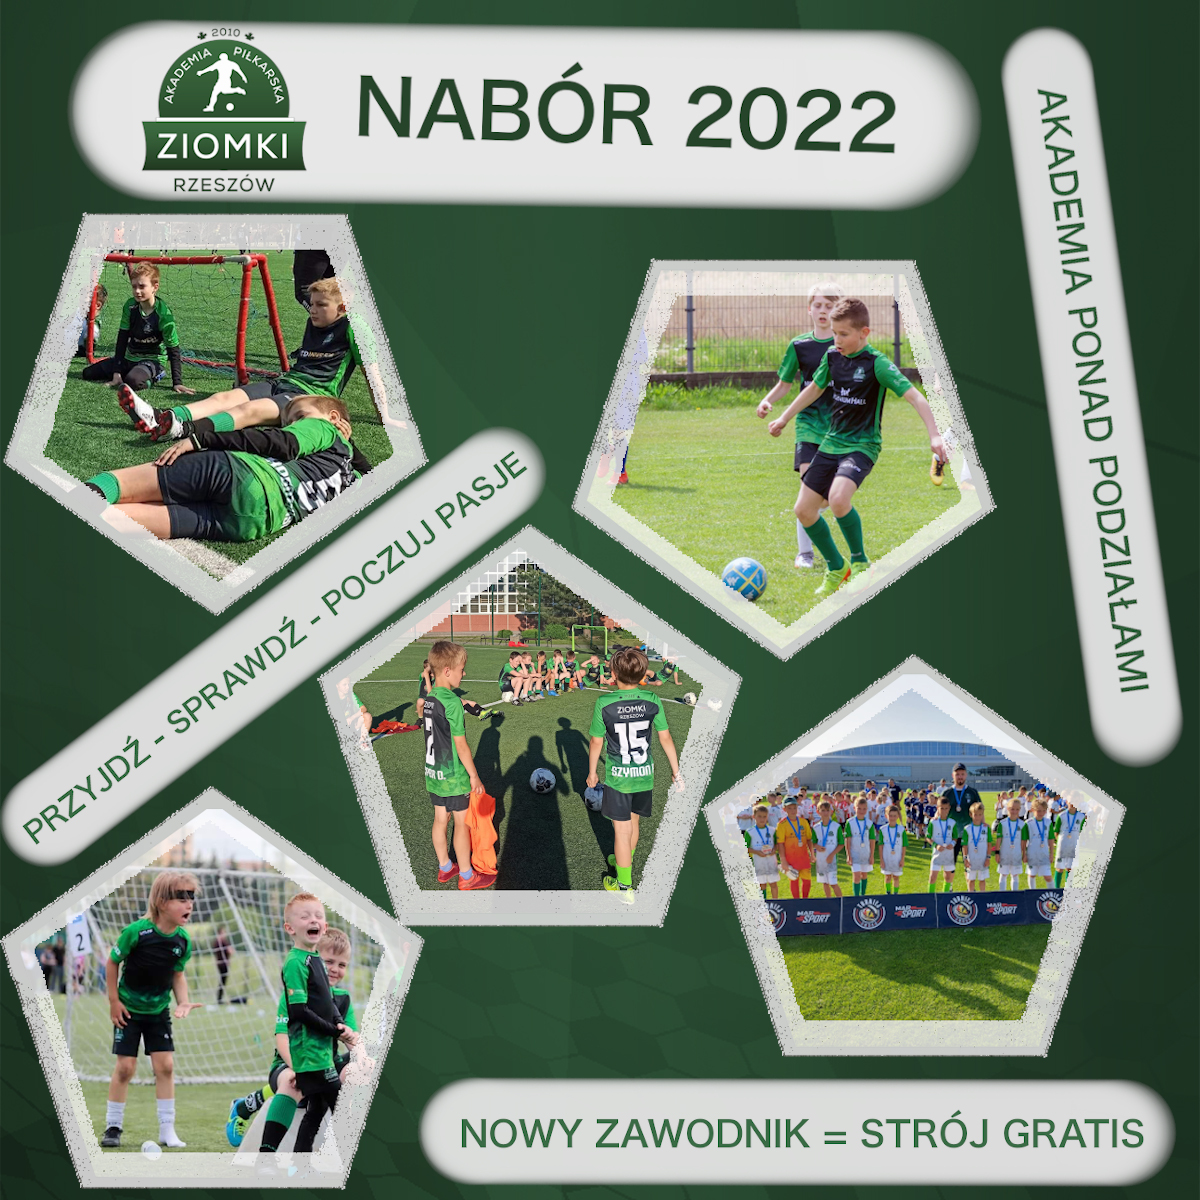 Nabór 2022 do Akademii Piłkarskiej ZIomki Rzeszów